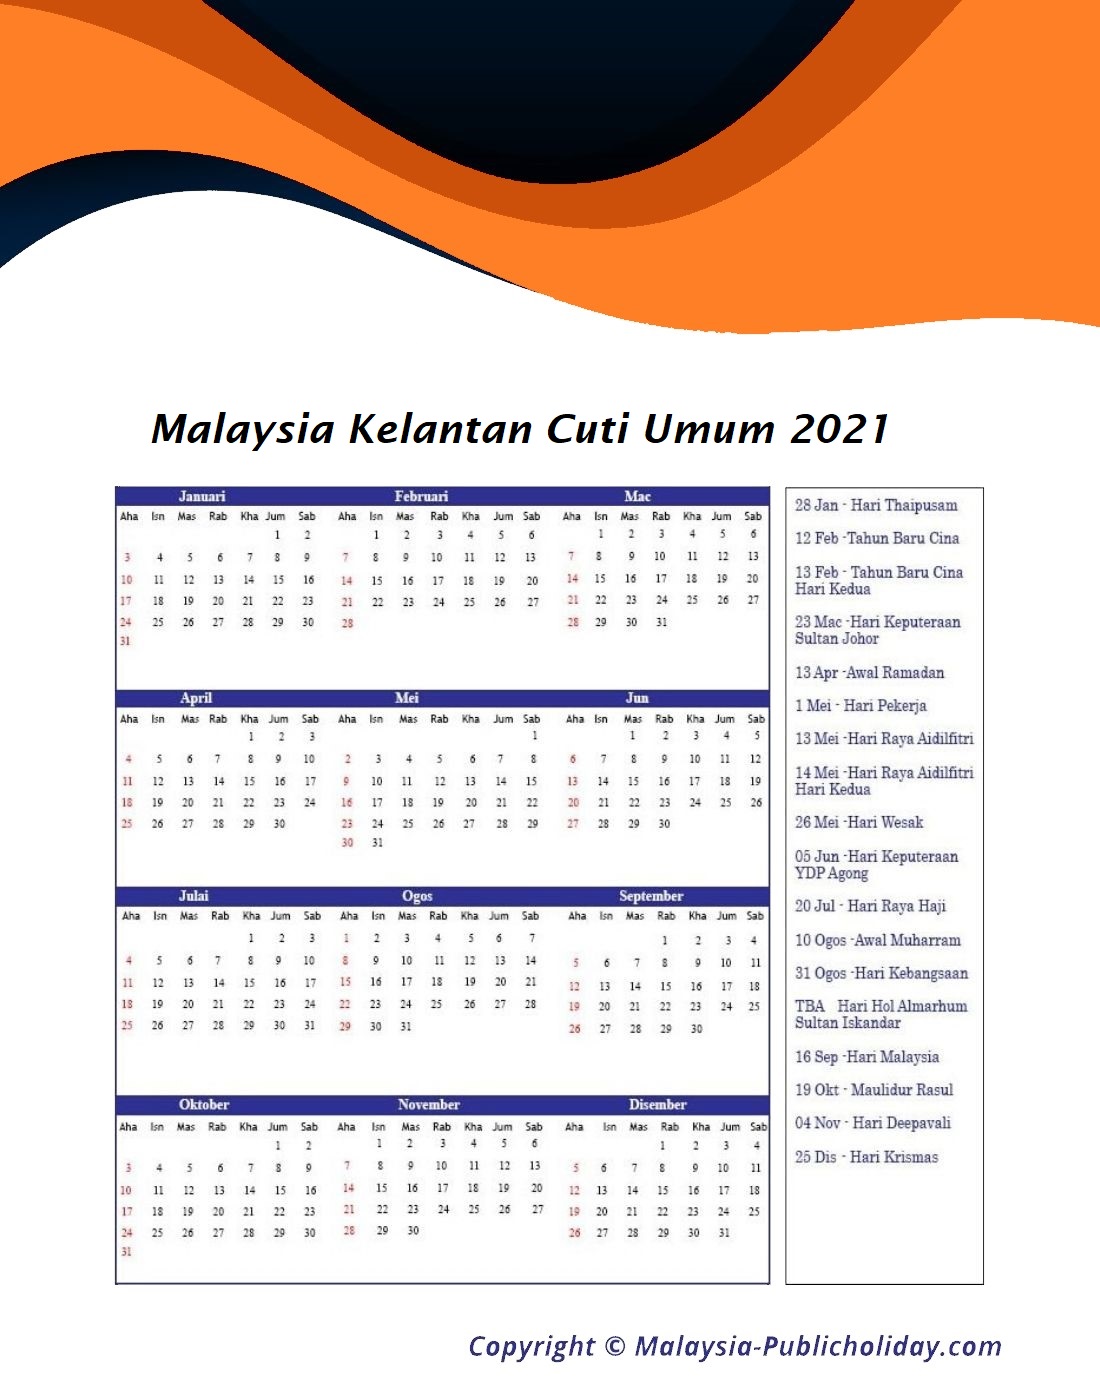 Kelantan sultan hari 2021 keputeraan